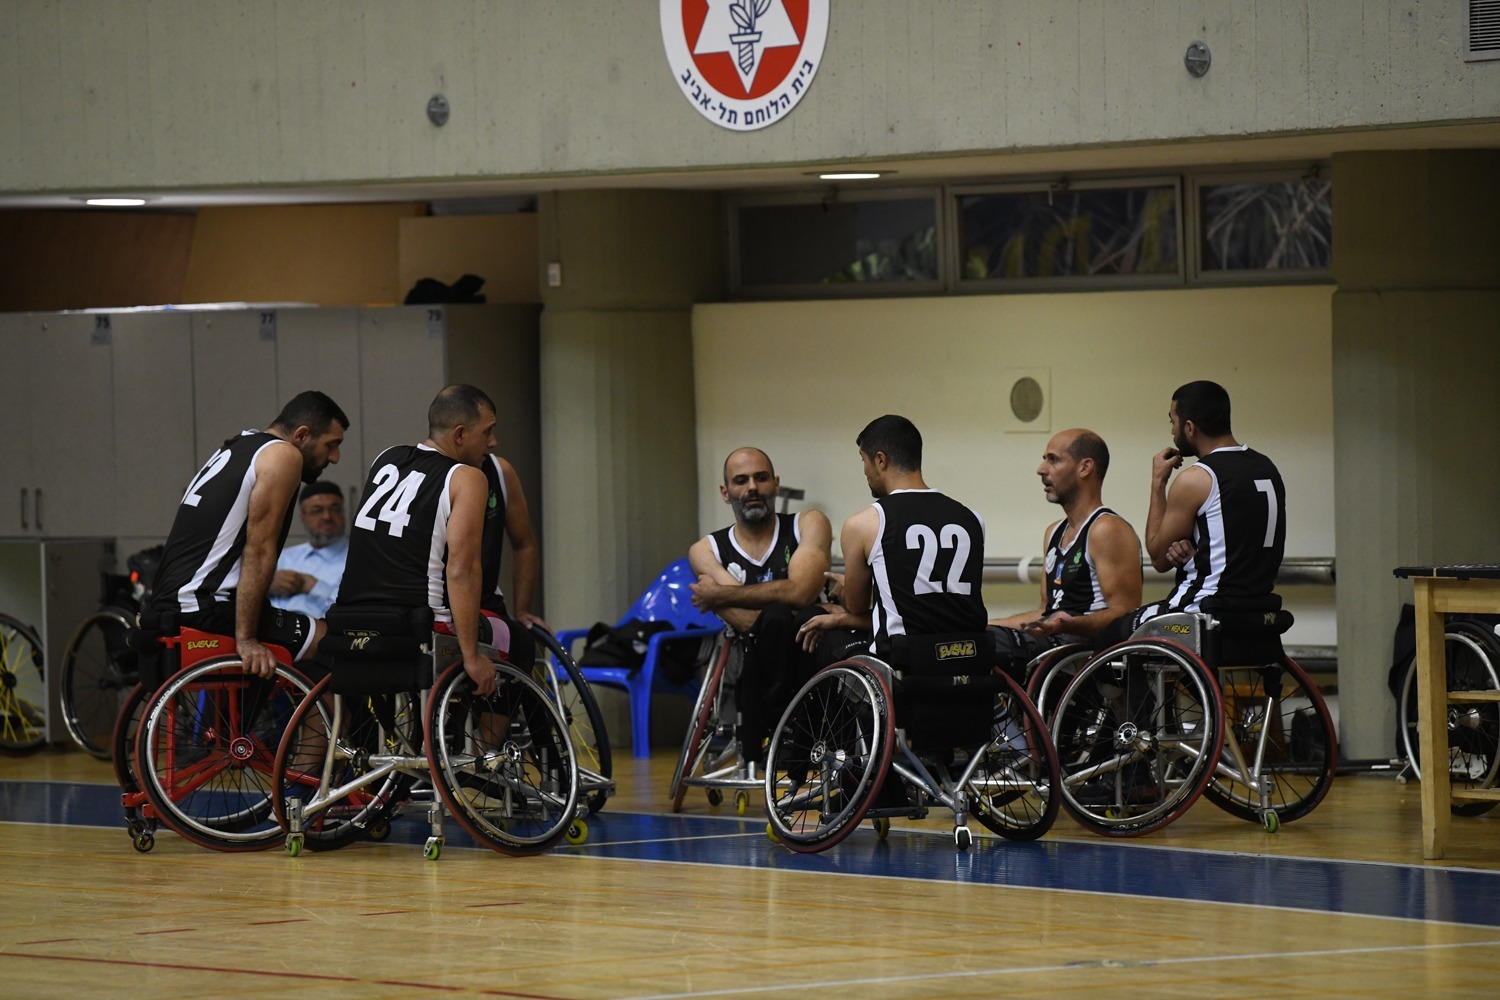 קבוצת מג'ד אל-כרום בכדורסל בכיסאות גלגלים (צילום: עלמא מכנס קז)